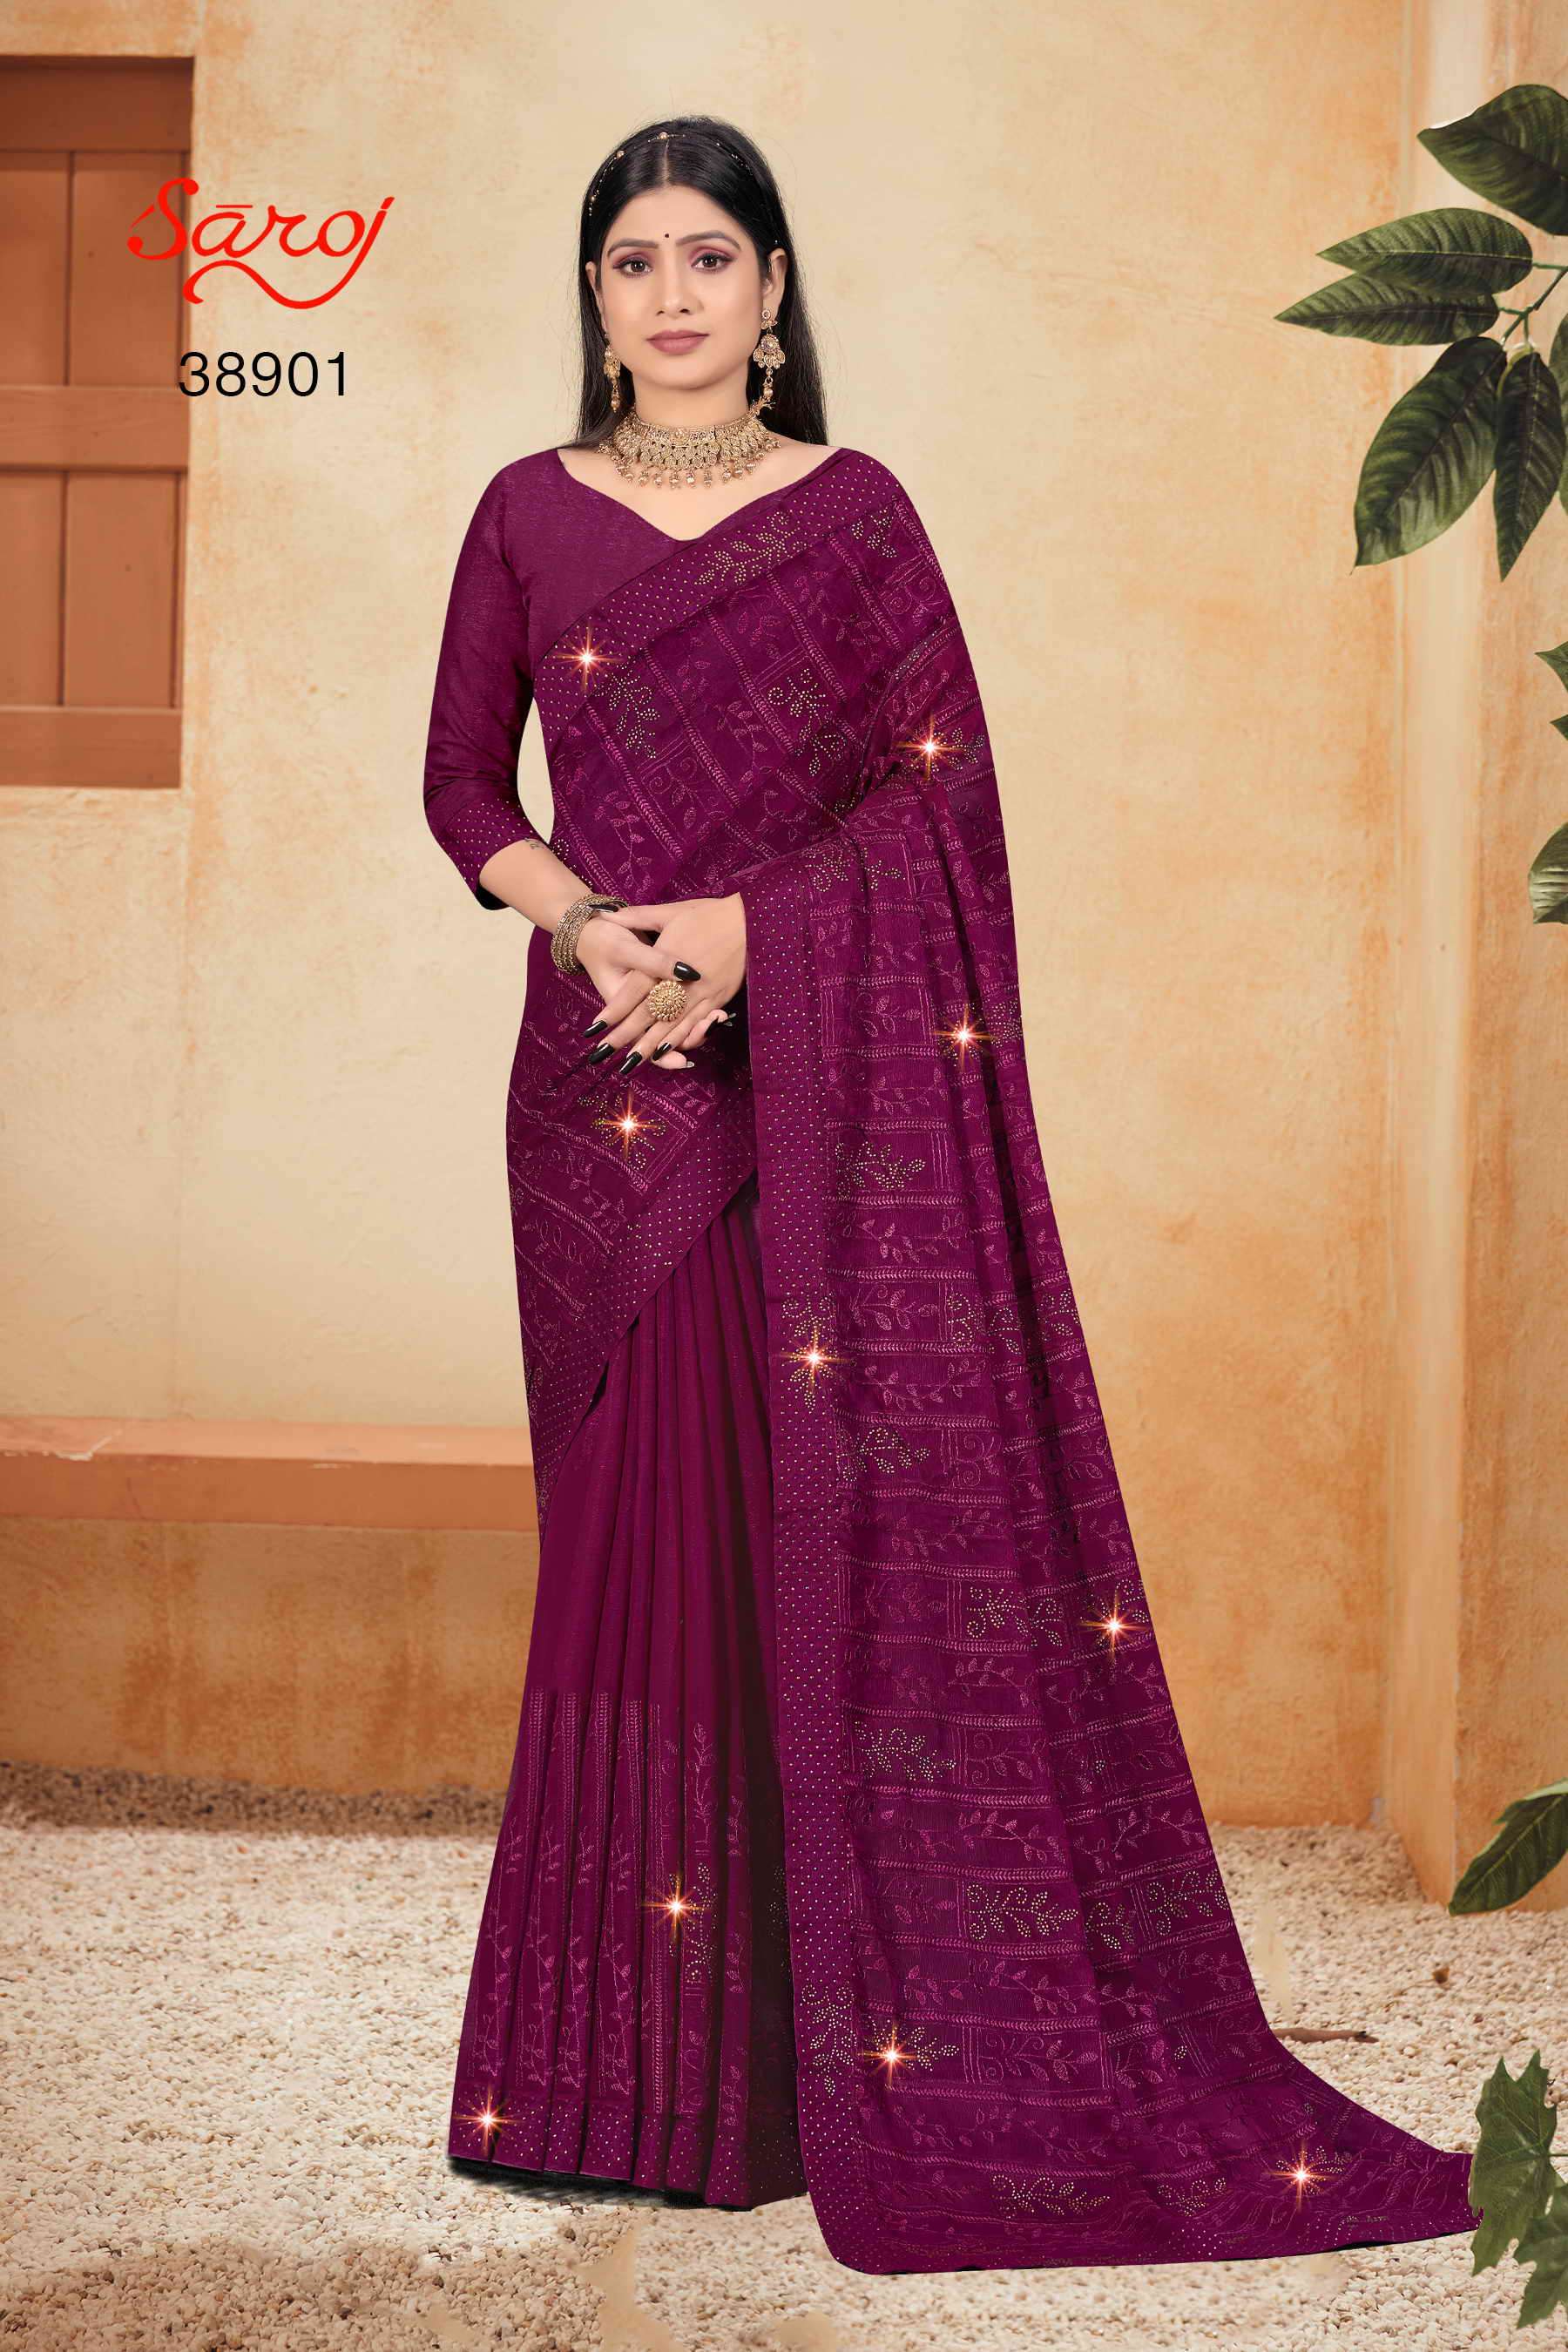 Saroj textile presents Richees Designer sarees catalogue